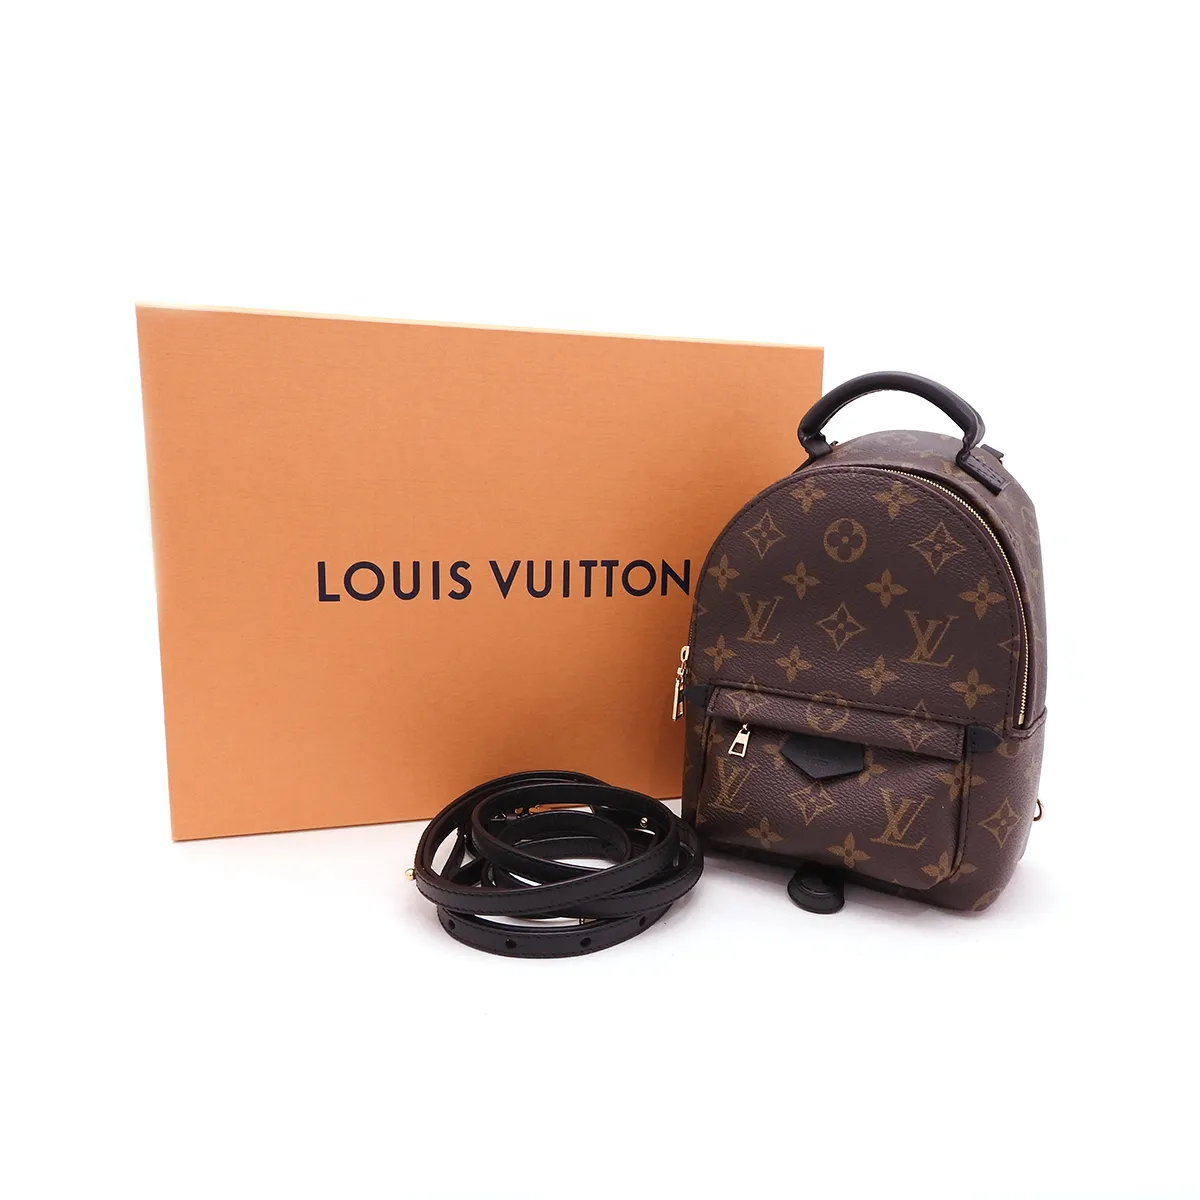 ルイヴィトン(Louis Vuitton) パームスプリングス バックパックMINI M44873 SAランク ブラウン